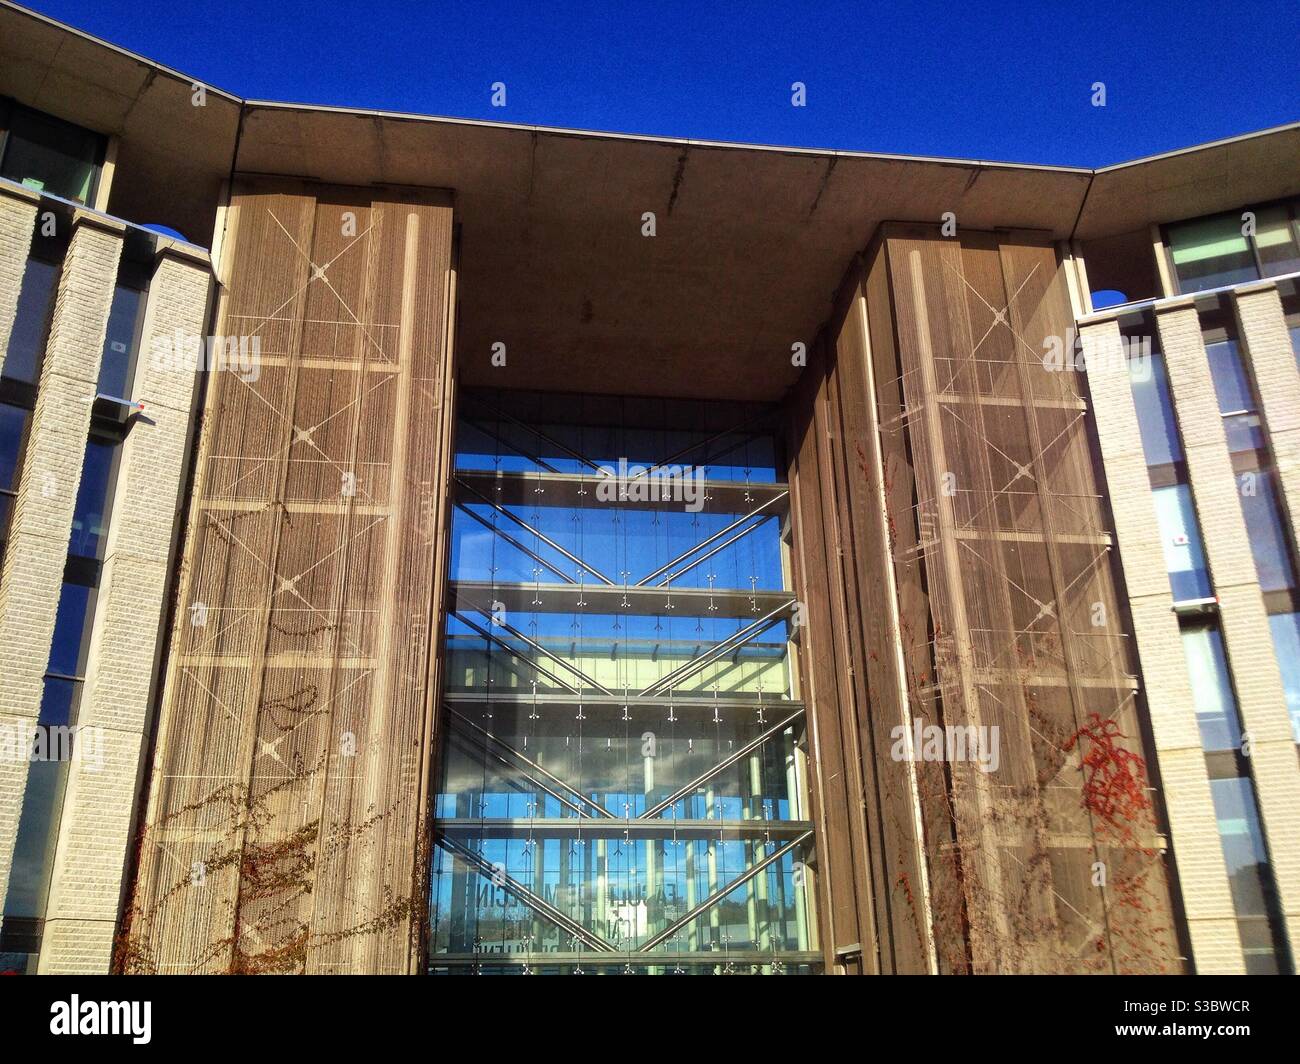 Neue Medizin Universität, Occitanie tram station, Montpellier Frankreich Stockfoto